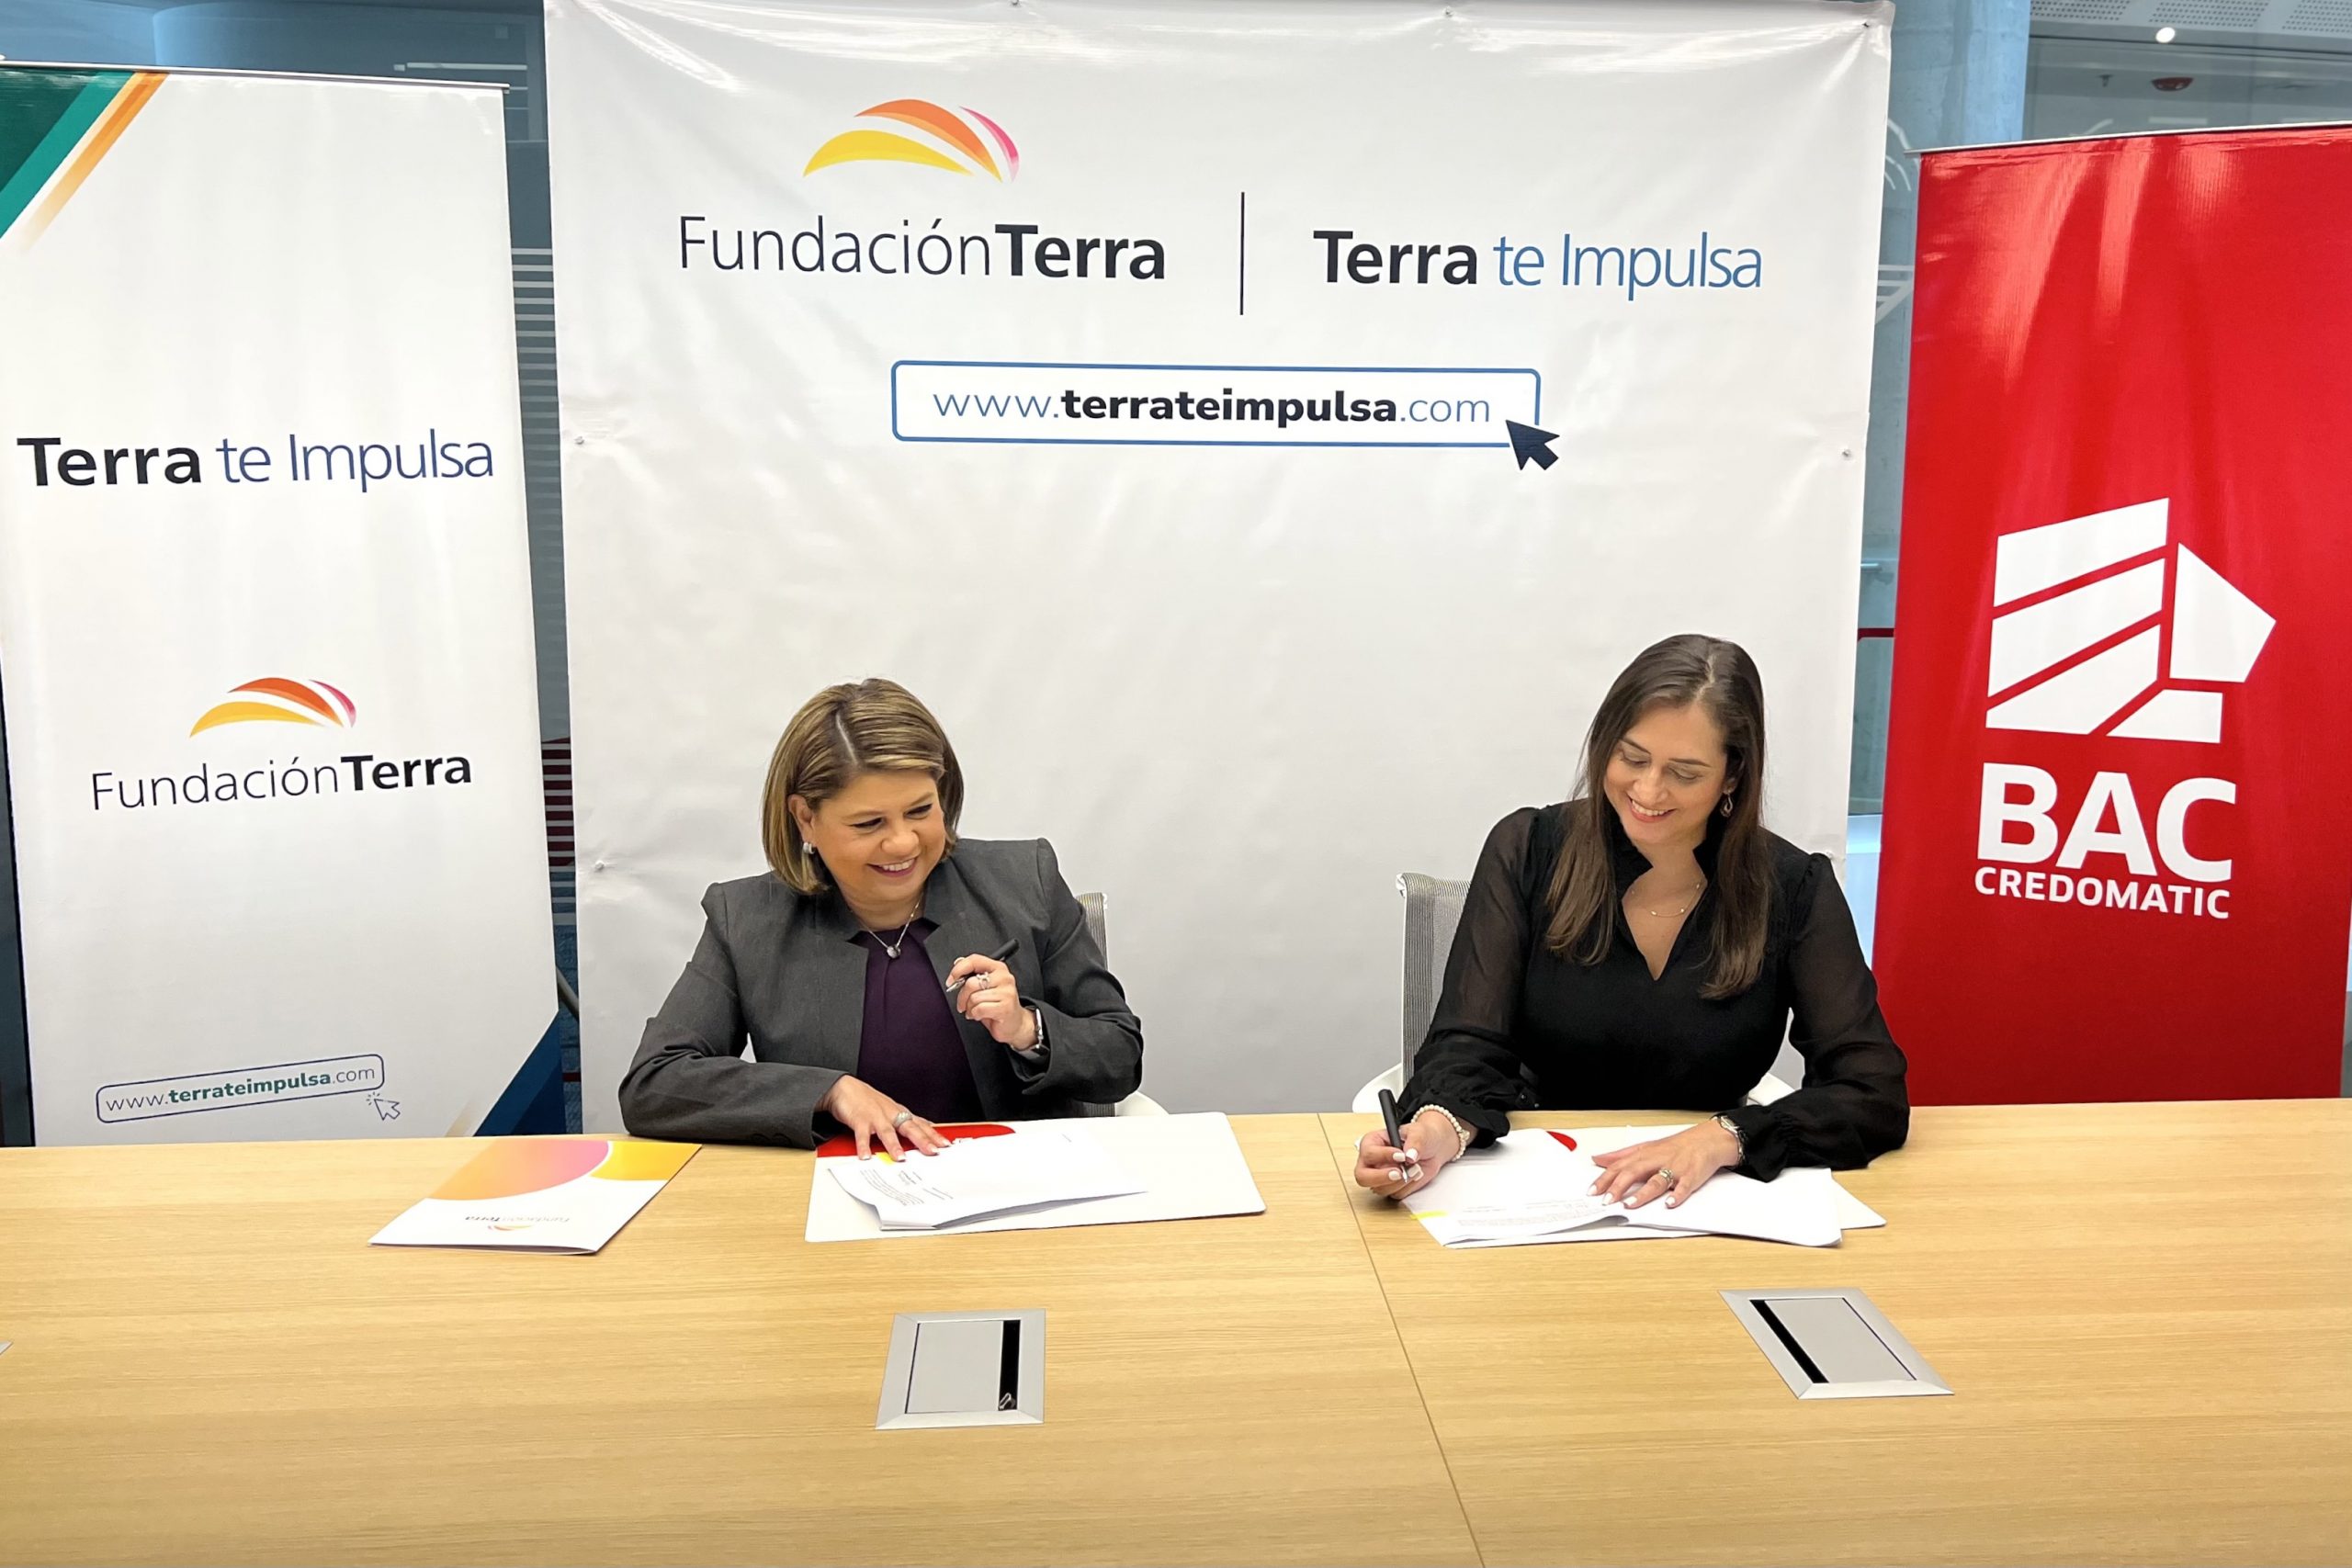 BAC y Fundación Terra firman acuerdo de cooperación en beneficio de los emprendedores